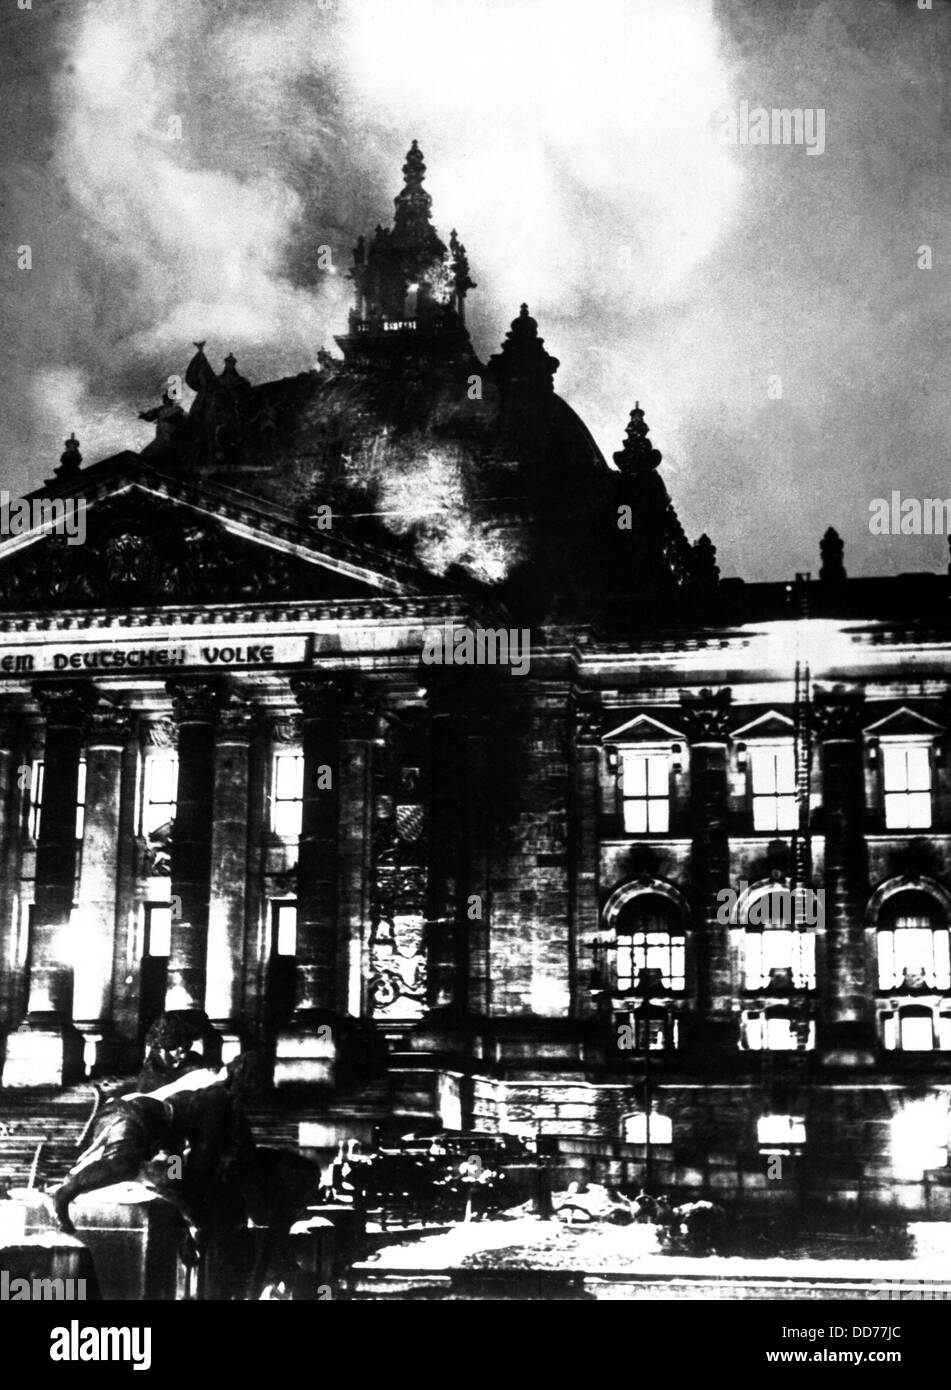 L'incendie du Reichstag, en février 27, 1933. L'incendie a éclaté simultanément dans 20 endroits, permettant à Hitler de s'emparer du pouvoir Banque D'Images